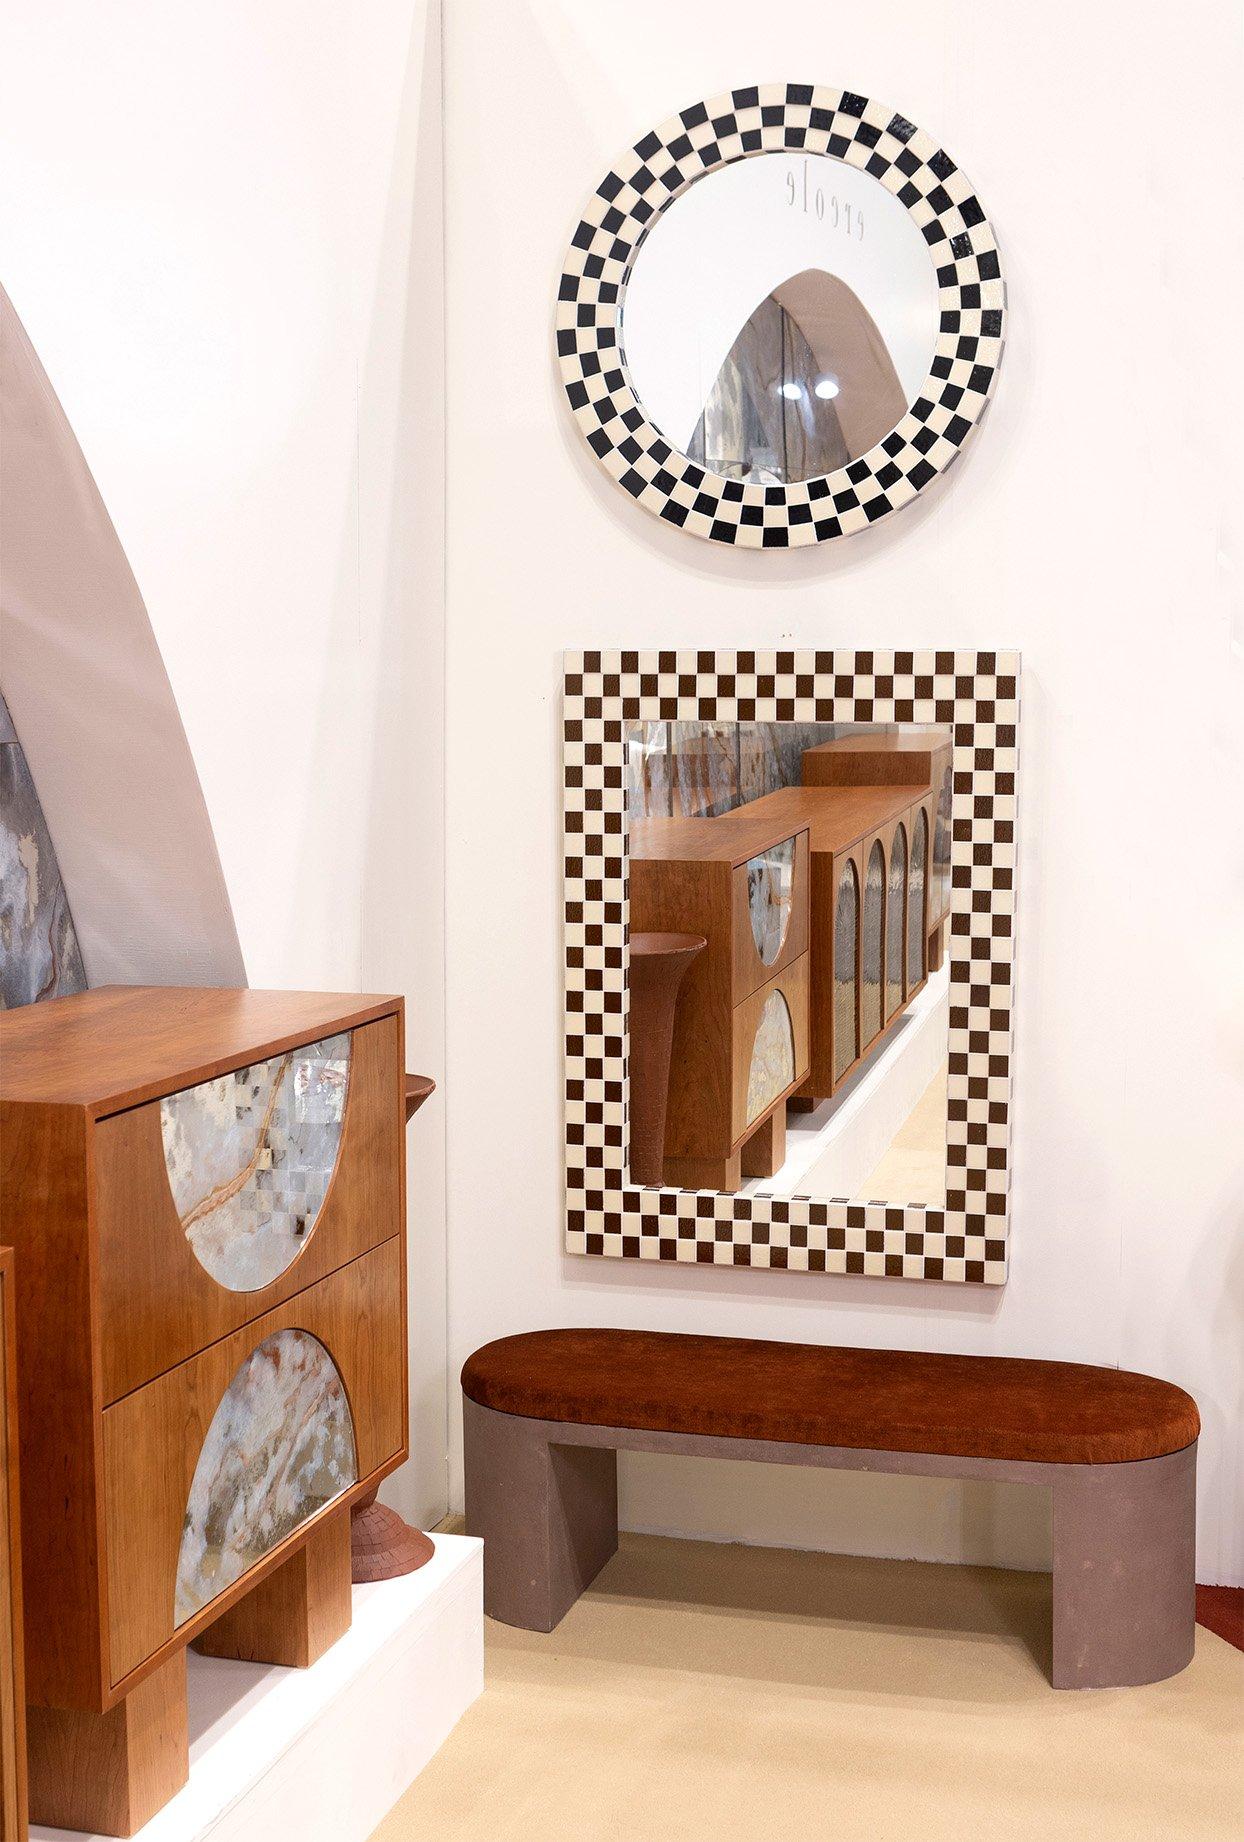 Dieser maßgeschneiderte, moderne, runde Spiegel bringt eine lässige, fröhliche Präsenz in Ihr Zuhause. Das karierte Mosaik besteht aus einer Mischung aus schwarzem und elfenbeinfarbenem Glas in mehreren Schichten. Die Umrandung des Spiegels beträgt